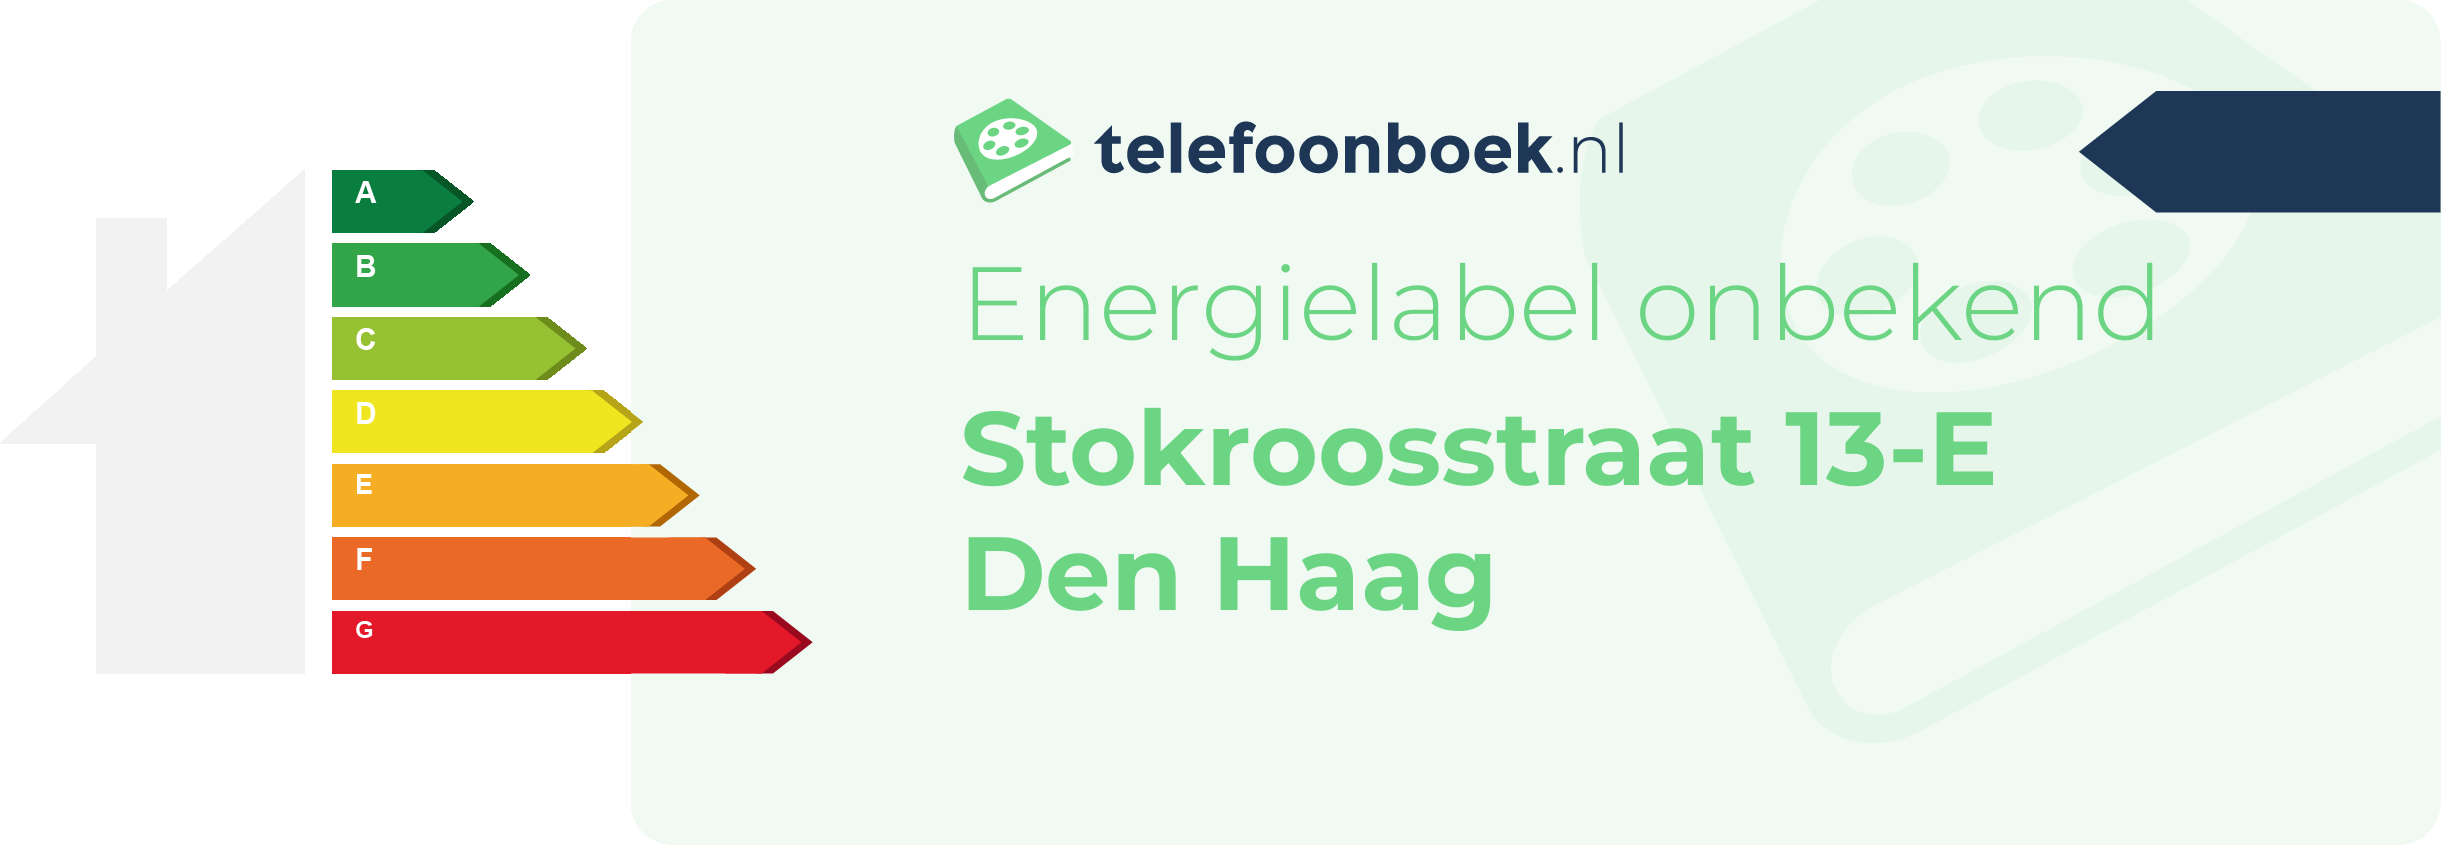 Energielabel Stokroosstraat 13-E Den Haag